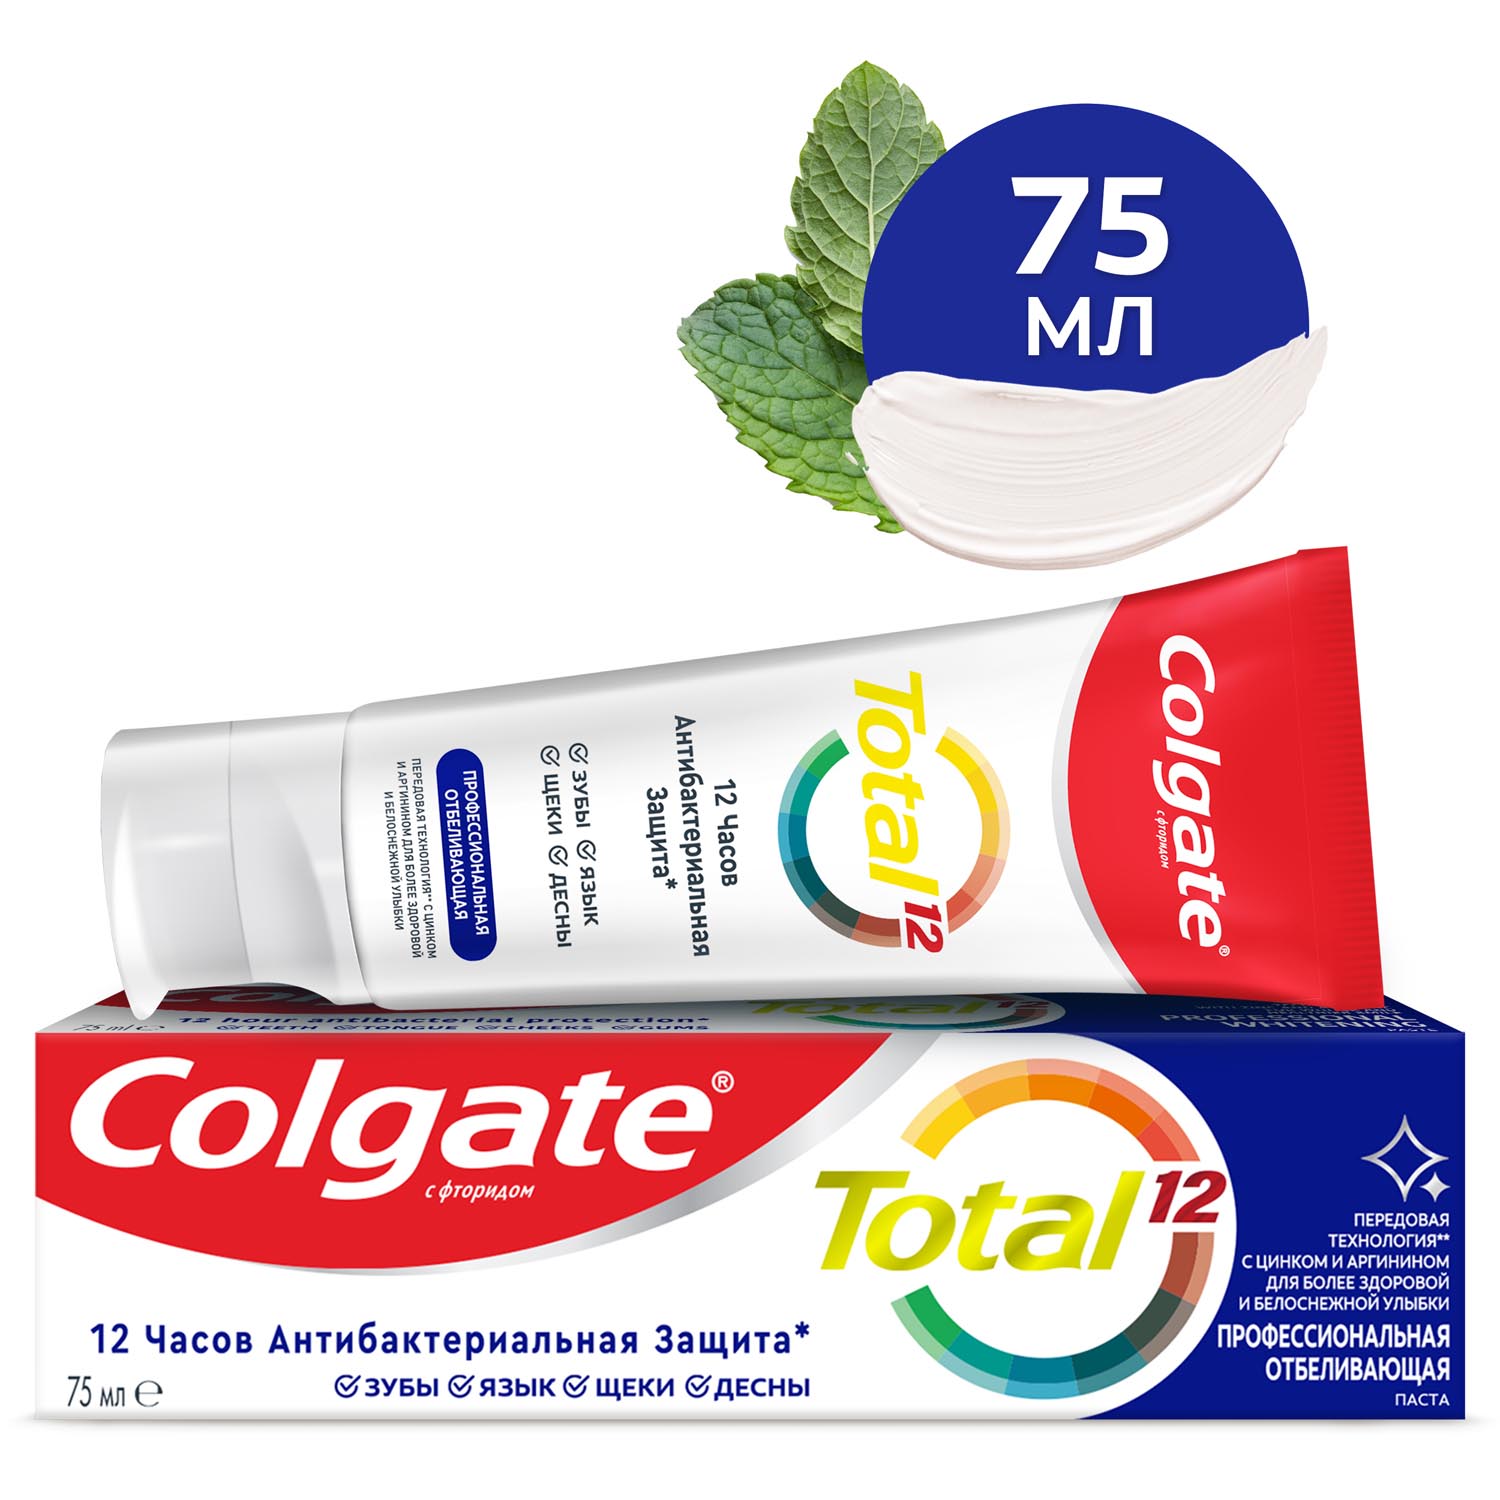 Зубная паста Colgate Total 12 Профессиональная Отбеливающая с цинком и аргинином для борьбы с потемнениями эмали и с антибактериальной защитой всей полости рта в течение 12 часов, 75 мл wp content